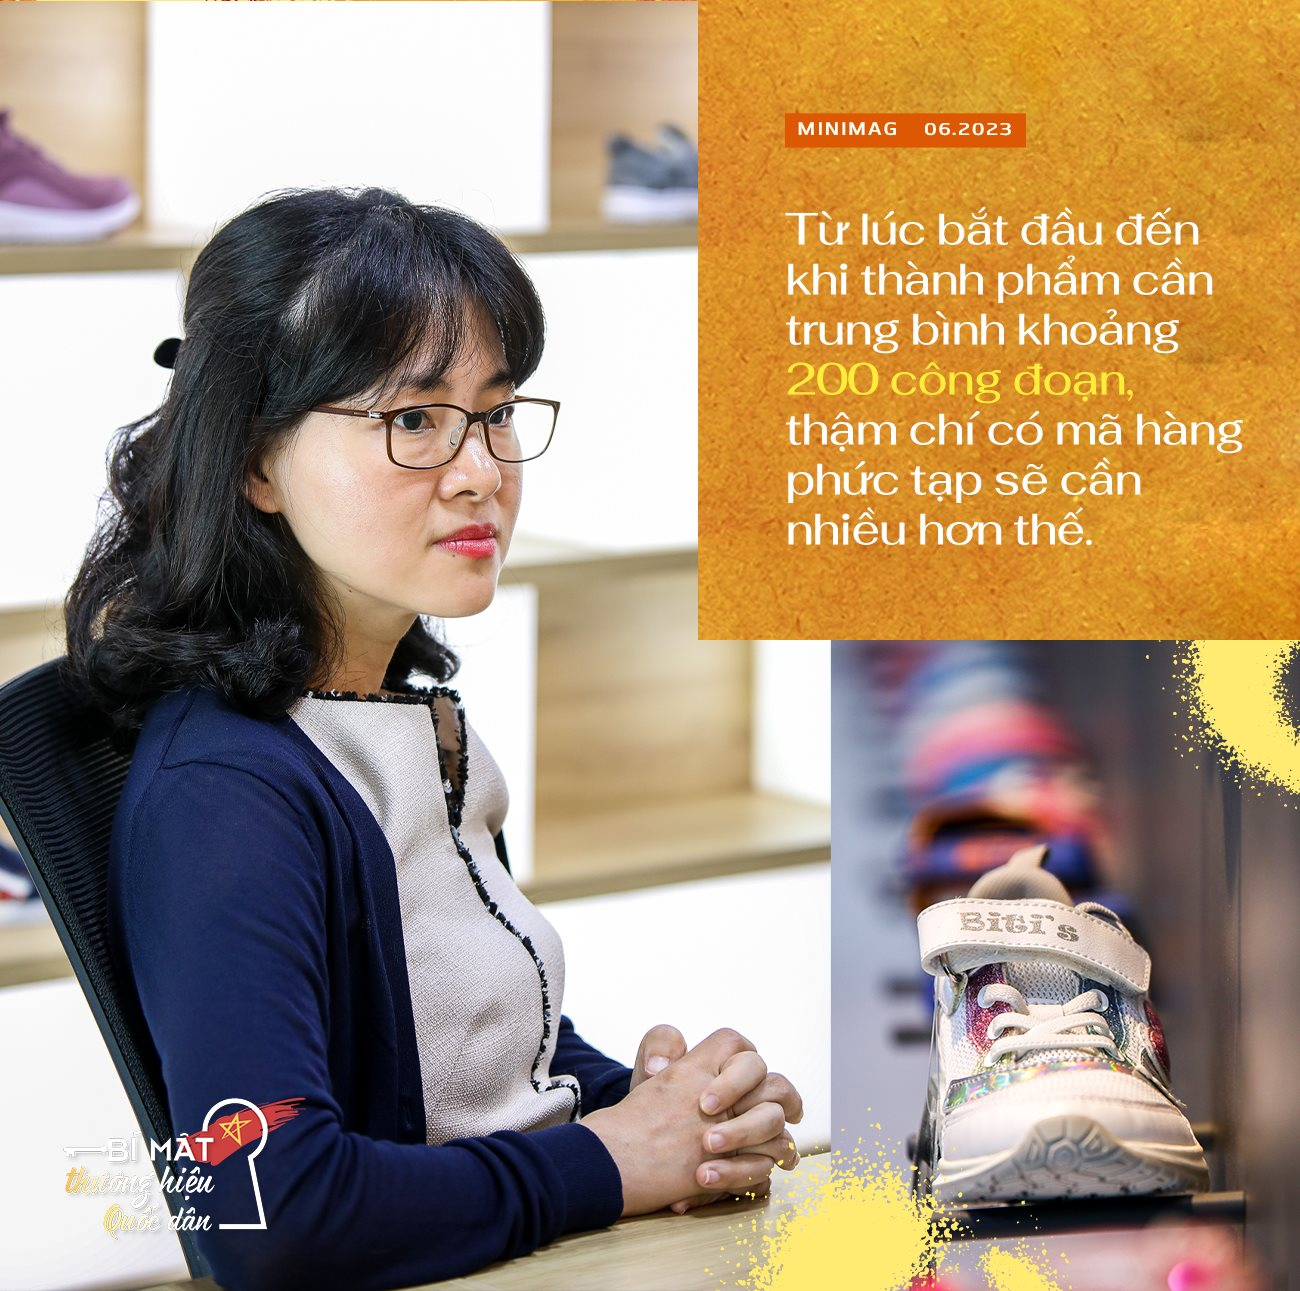 Phó TGĐ Biti’s Vưu Lệ Minh lần đầu kể chuyện làm giày: 200 công đoạn, 1 năm thiết kế, 20 ngày sản xuất - Ảnh 7.